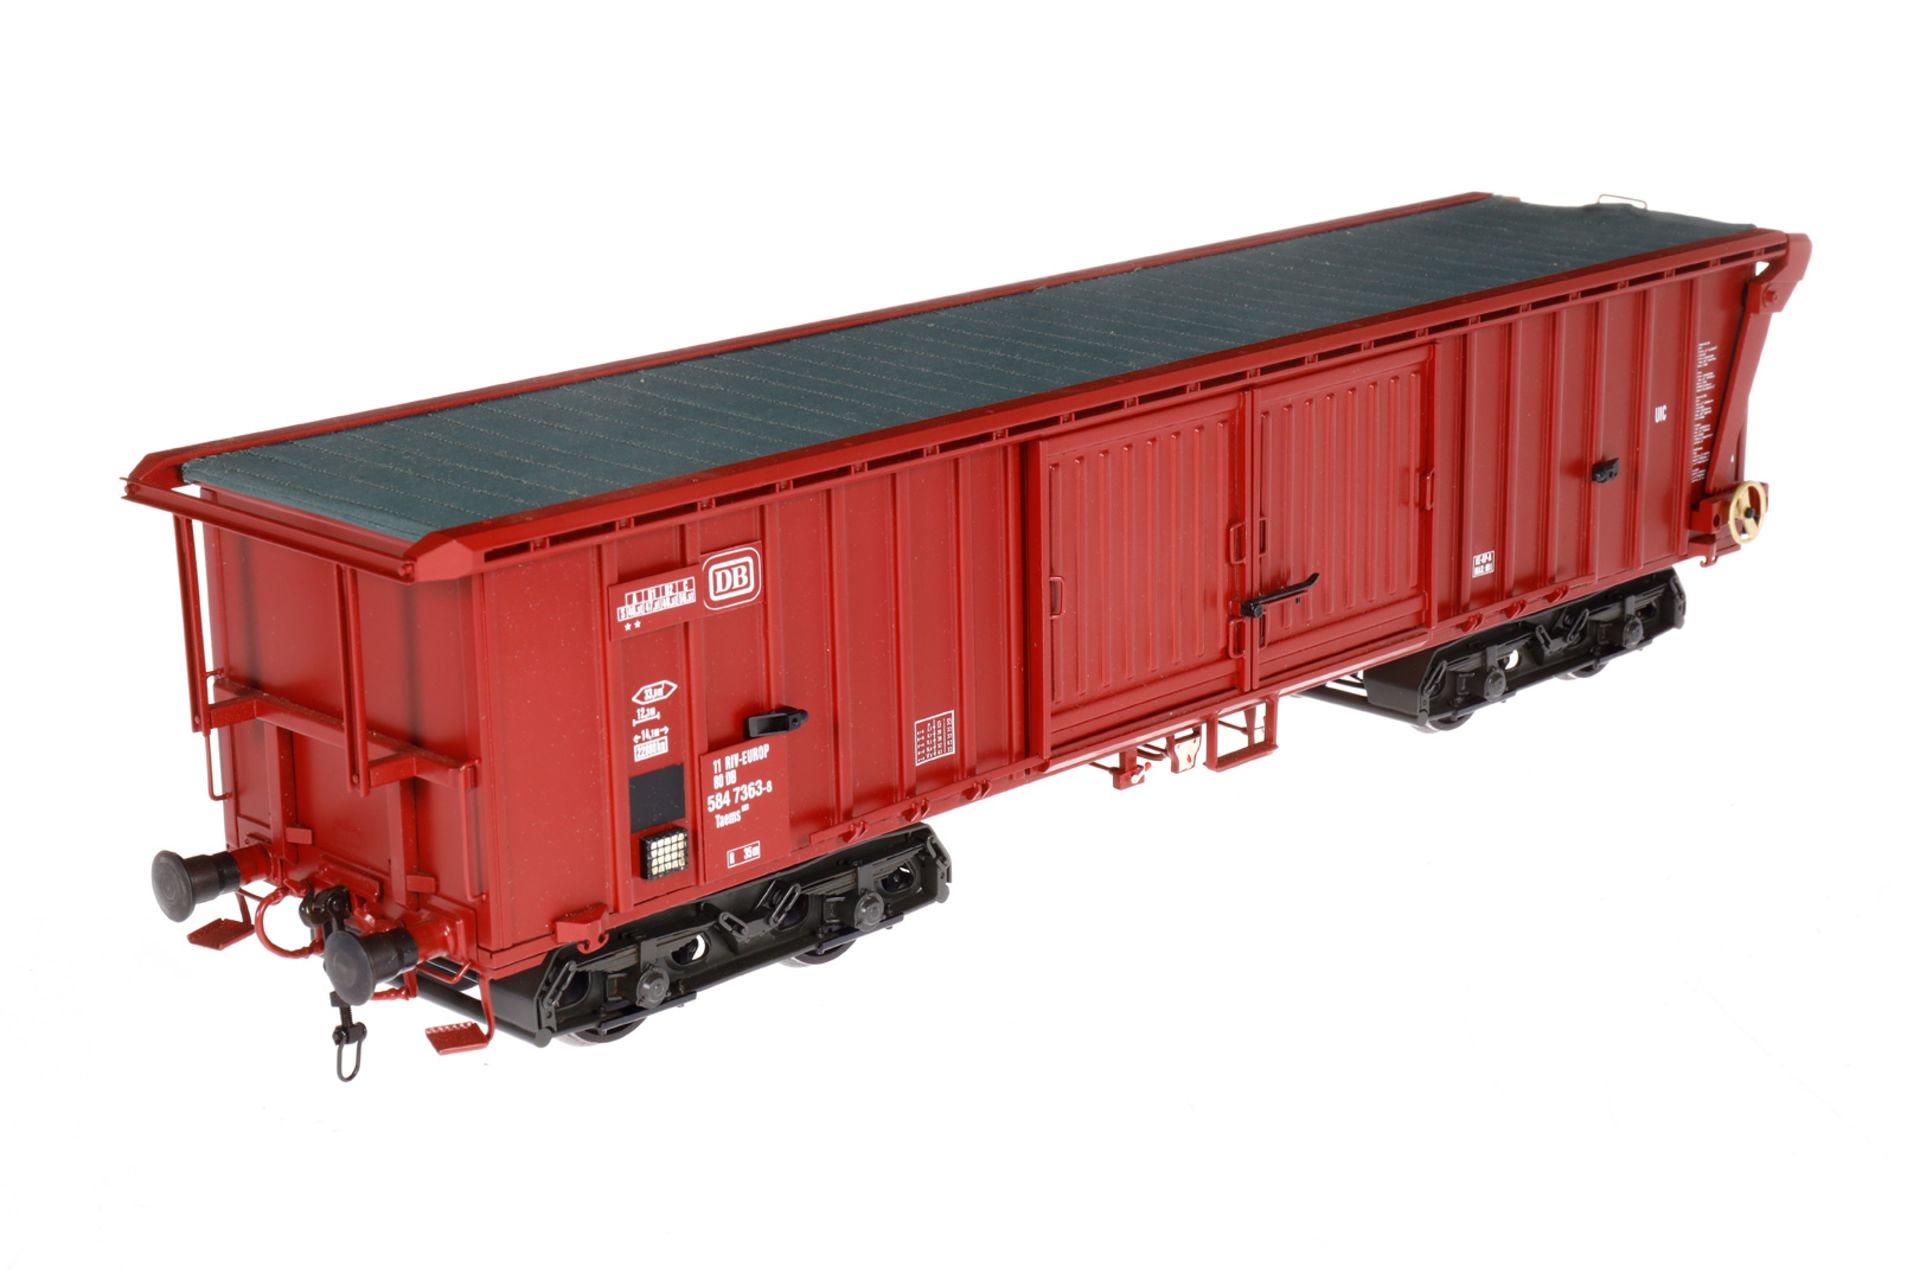 Bockholt Güterwagen ”584 7363-8”, Spur 1, rotbraun, LS und Alterungsspuren, L 44, im Karton, Z 1-2 - Image 2 of 5